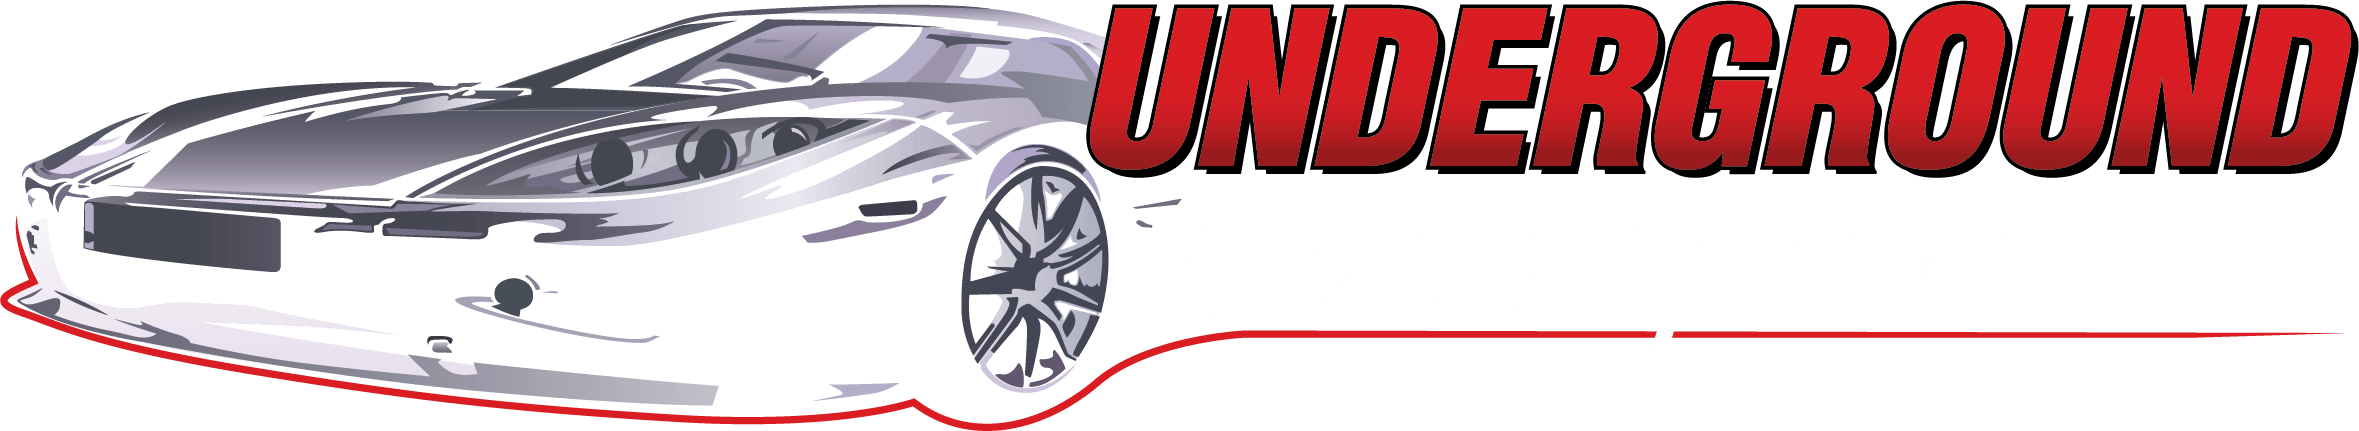 Performance Automotive Shop Logo - Underground Autosports | - Chicago's Premier Automotive Performance Shop